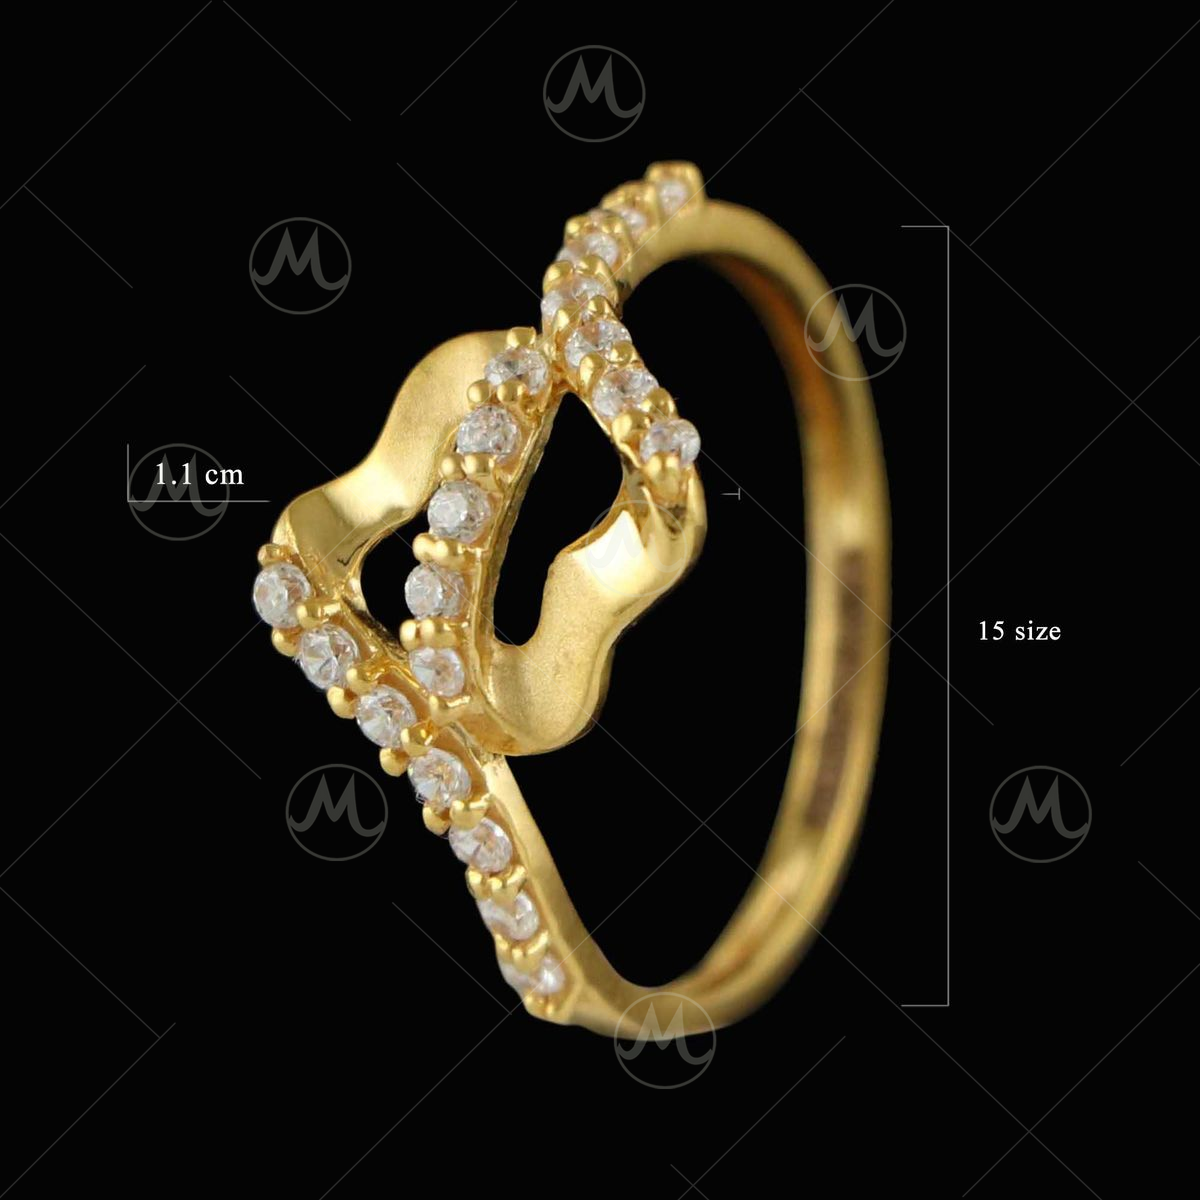 22 Karat Gold 'Loin' Ring For Men - 235-GR5541 in 5.300 Grams